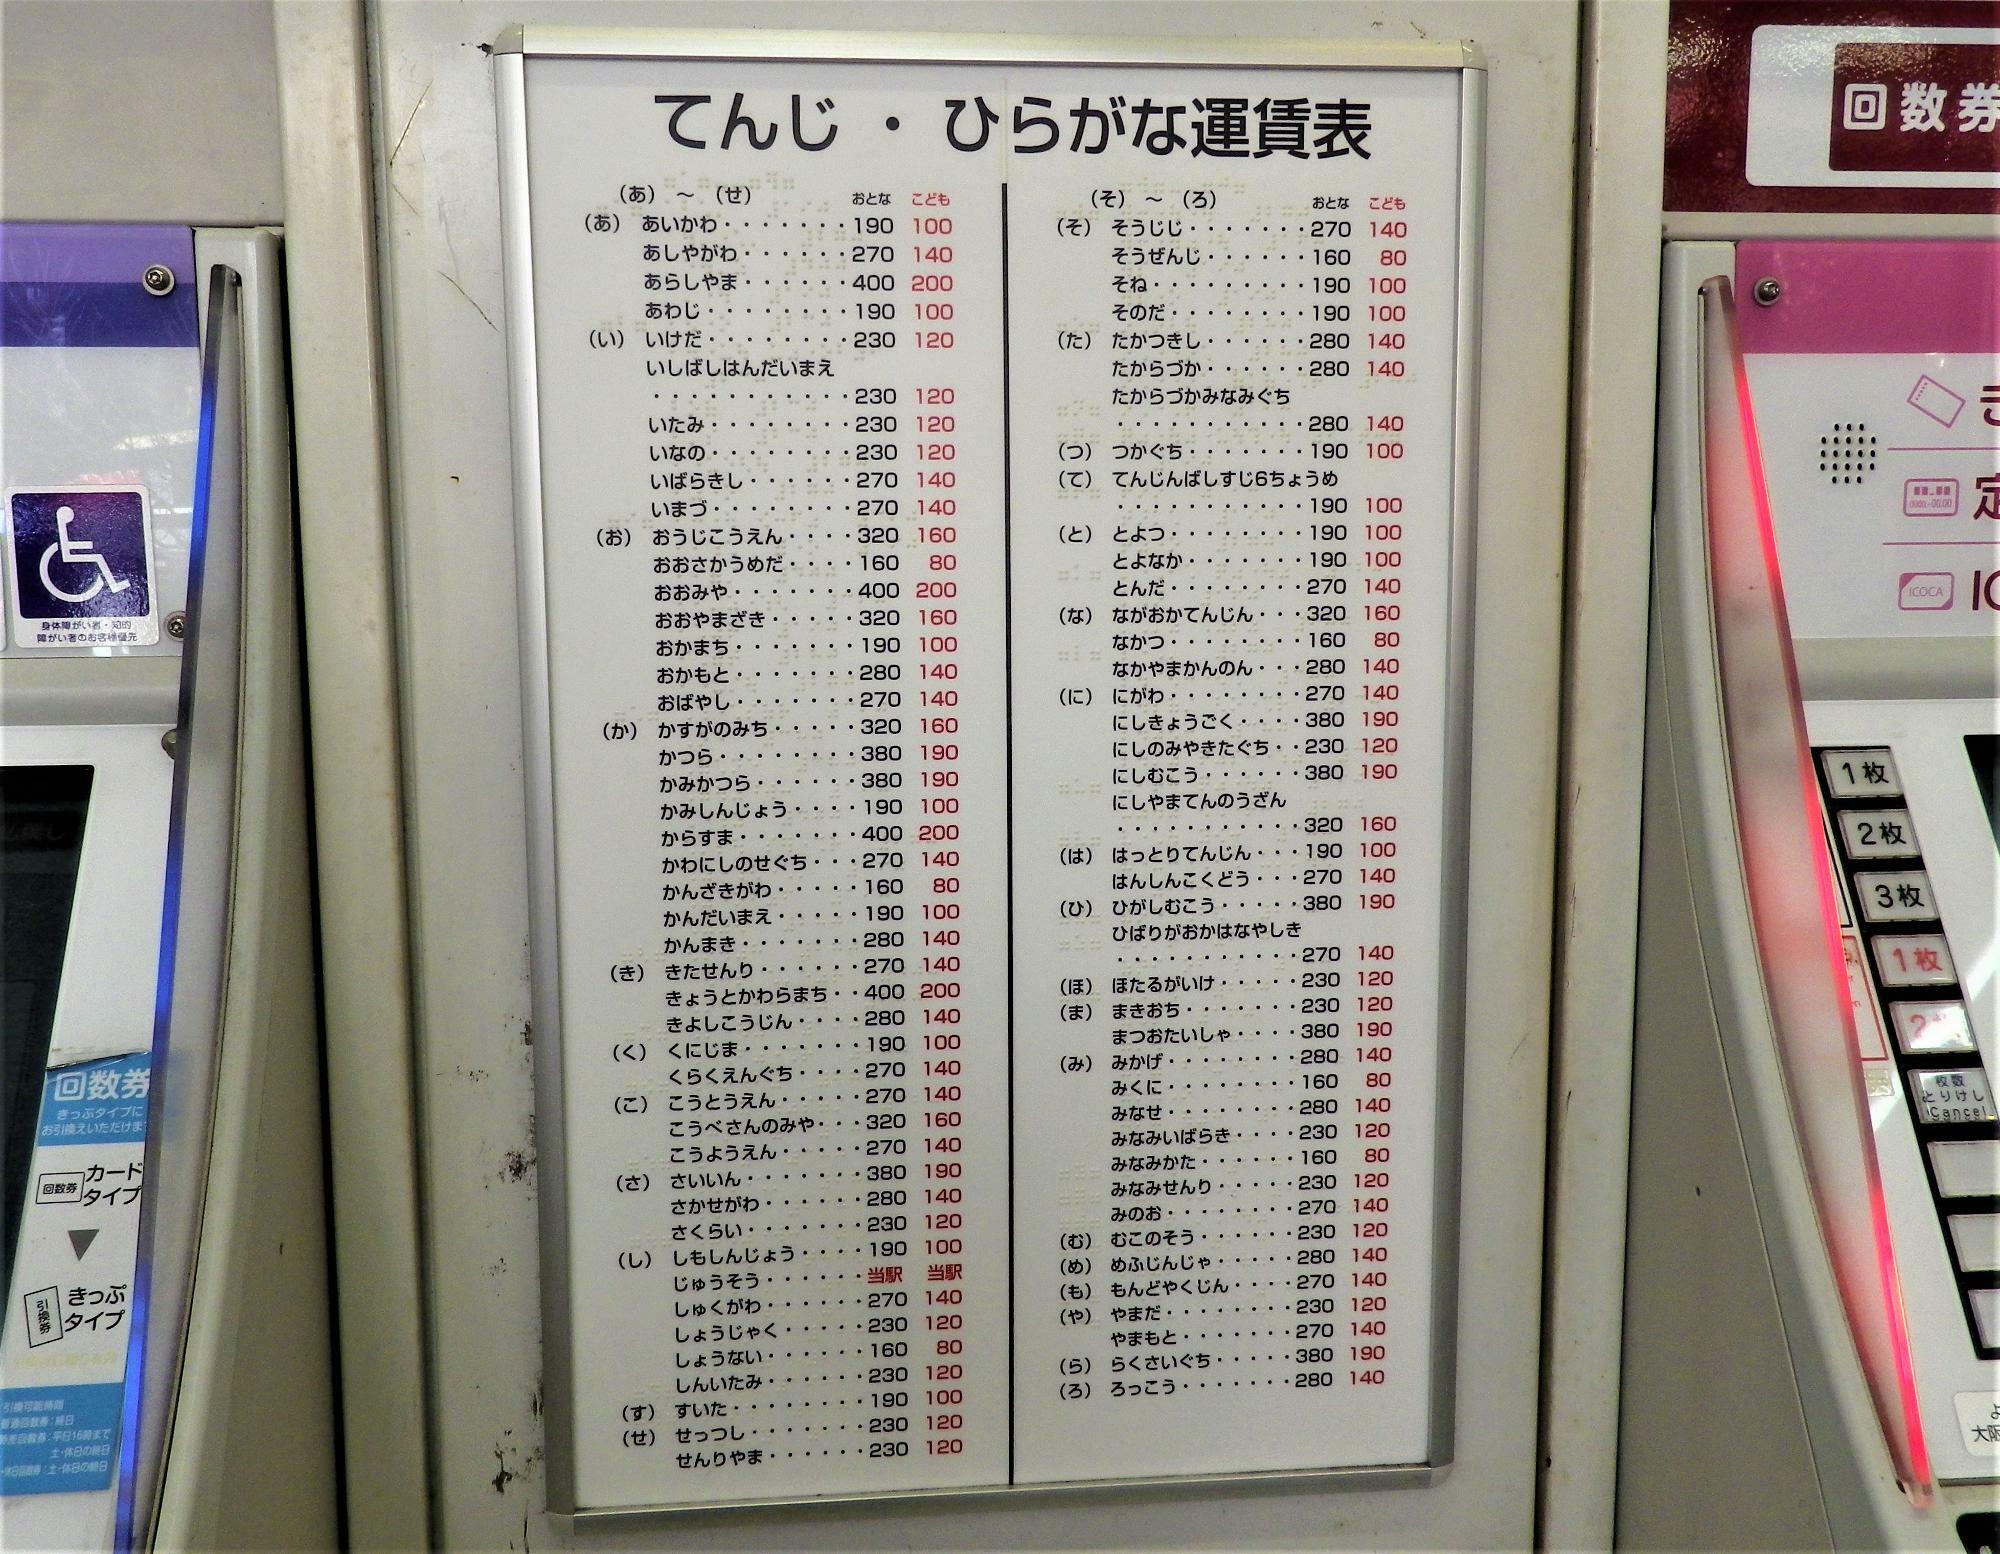 券売機の横にある「点字・ひらがな運賃表」。